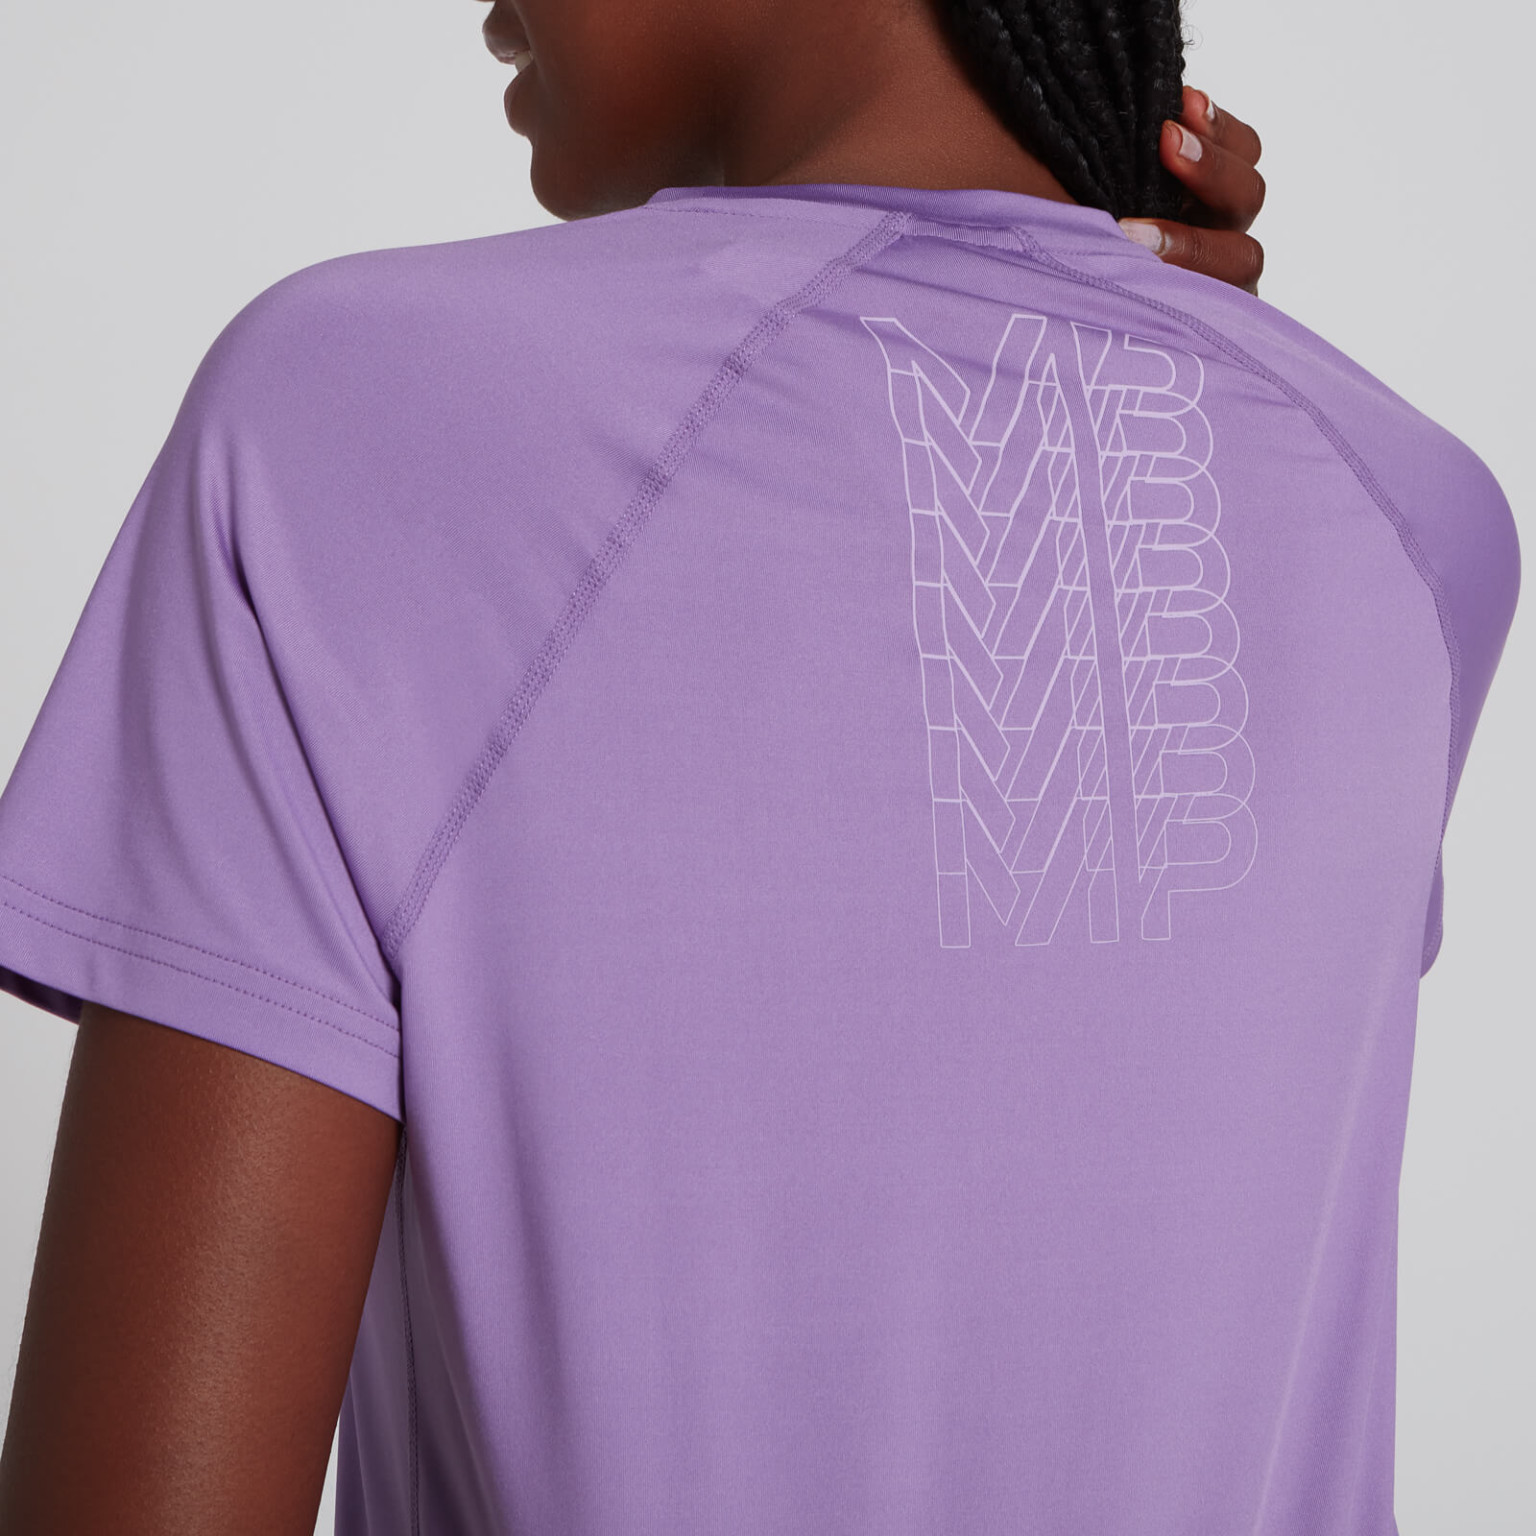 fioletowa koszulka sportowa krótki rękaw logo nadruk